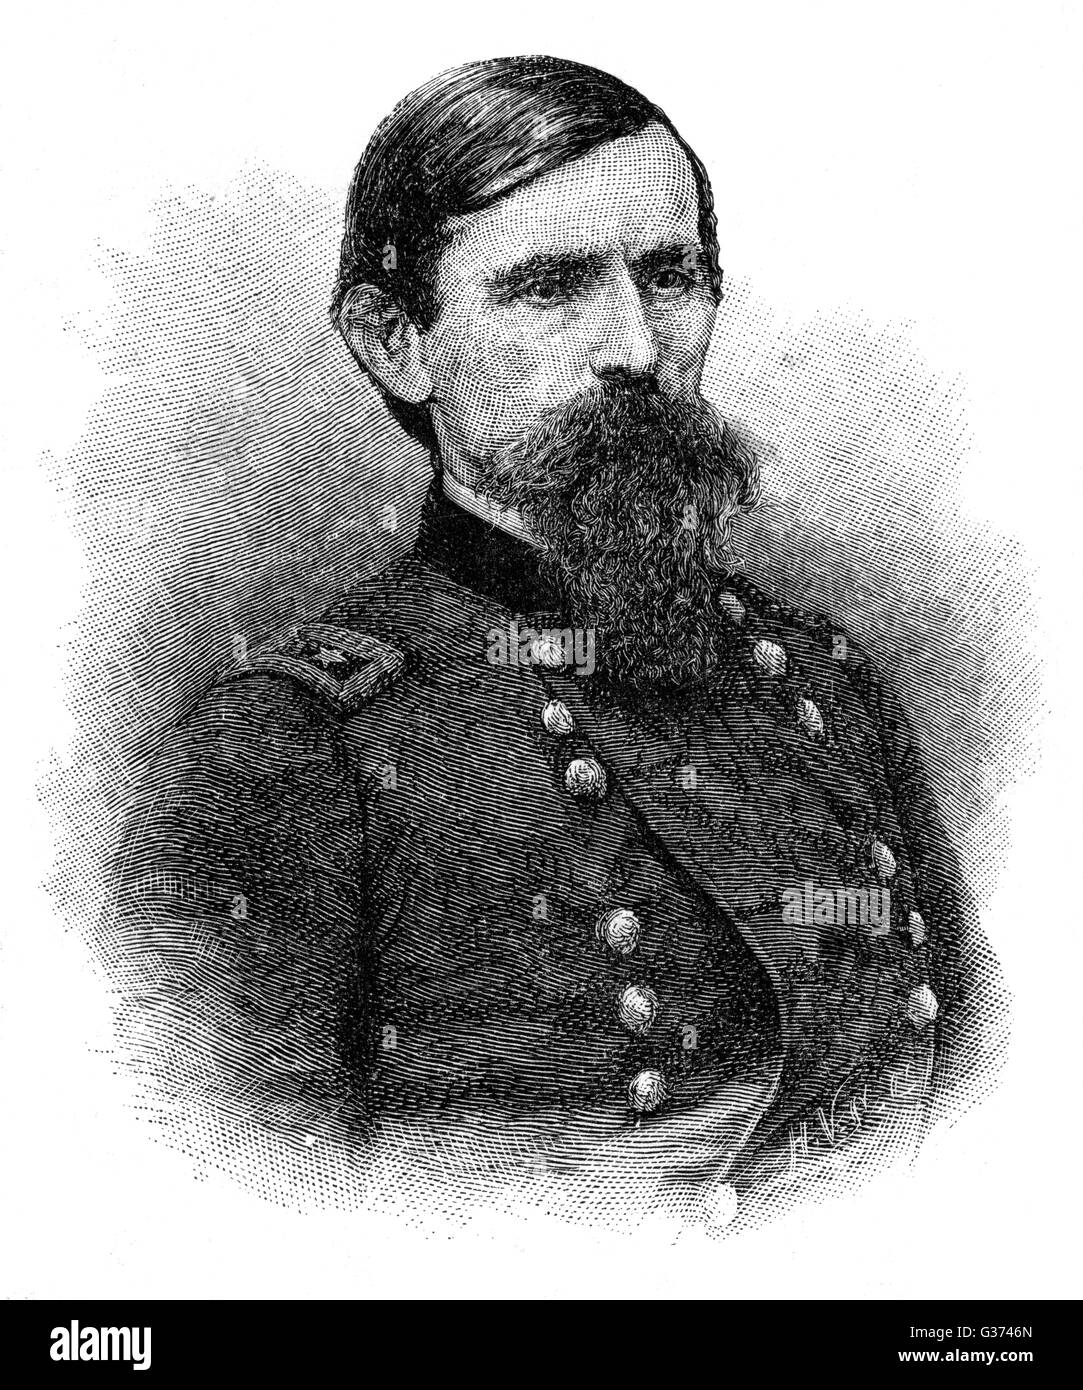 Major General LEW WALLACE amerikanischer militärischer Befehlshaber, am bekanntesten für sein Buch "Ben Hur".       Datum: 1827-1905 Stockfoto